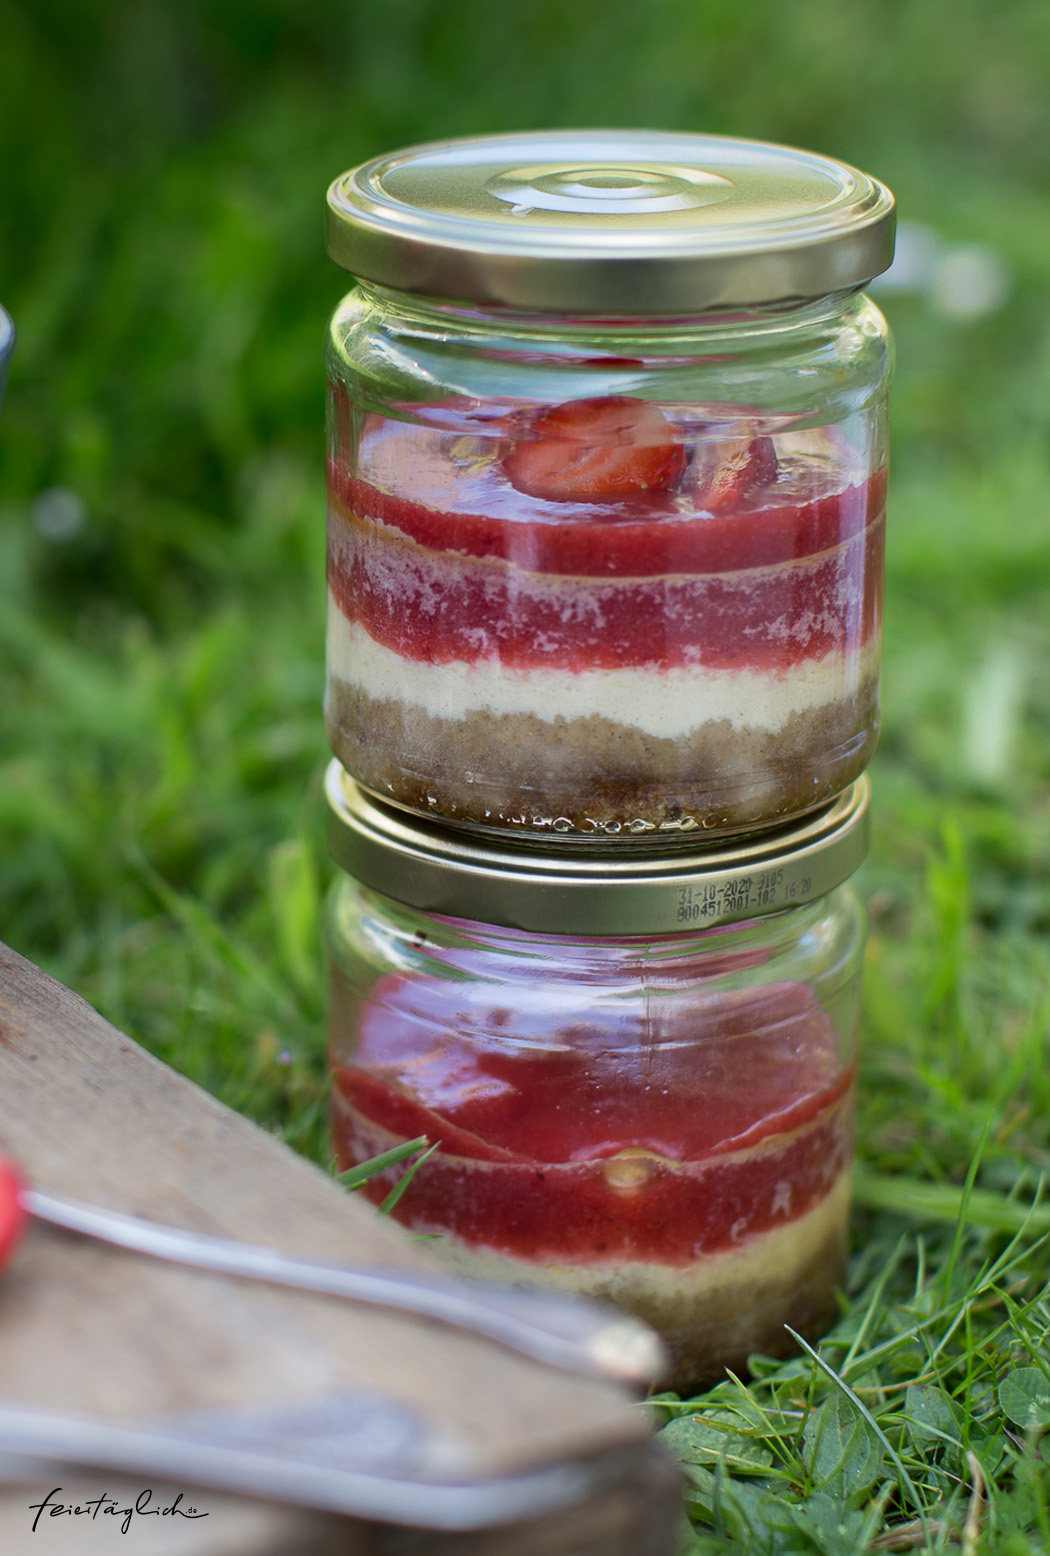 Picknickrezept: Kleine Erdbeer-Cheesecakes im Glas mit knusprigem Boden, Erdbeerpüree und frischen Erdbeeren, Meal-Prep-Dessert